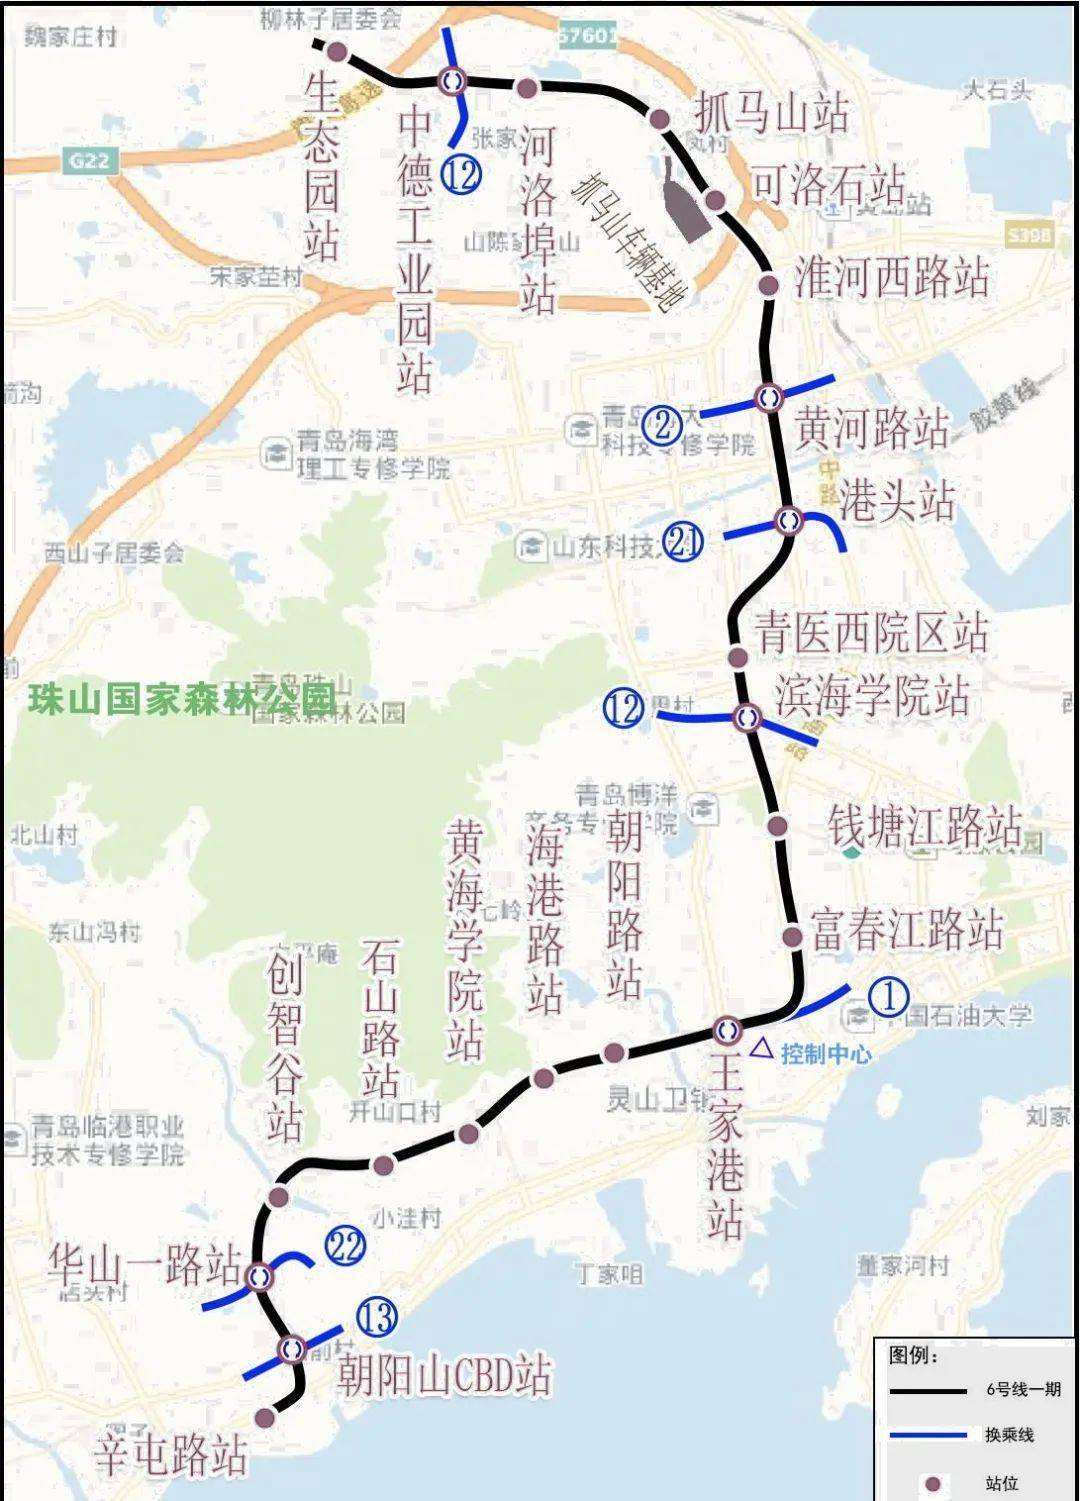 青岛地铁6号线一期工程调整站名公示